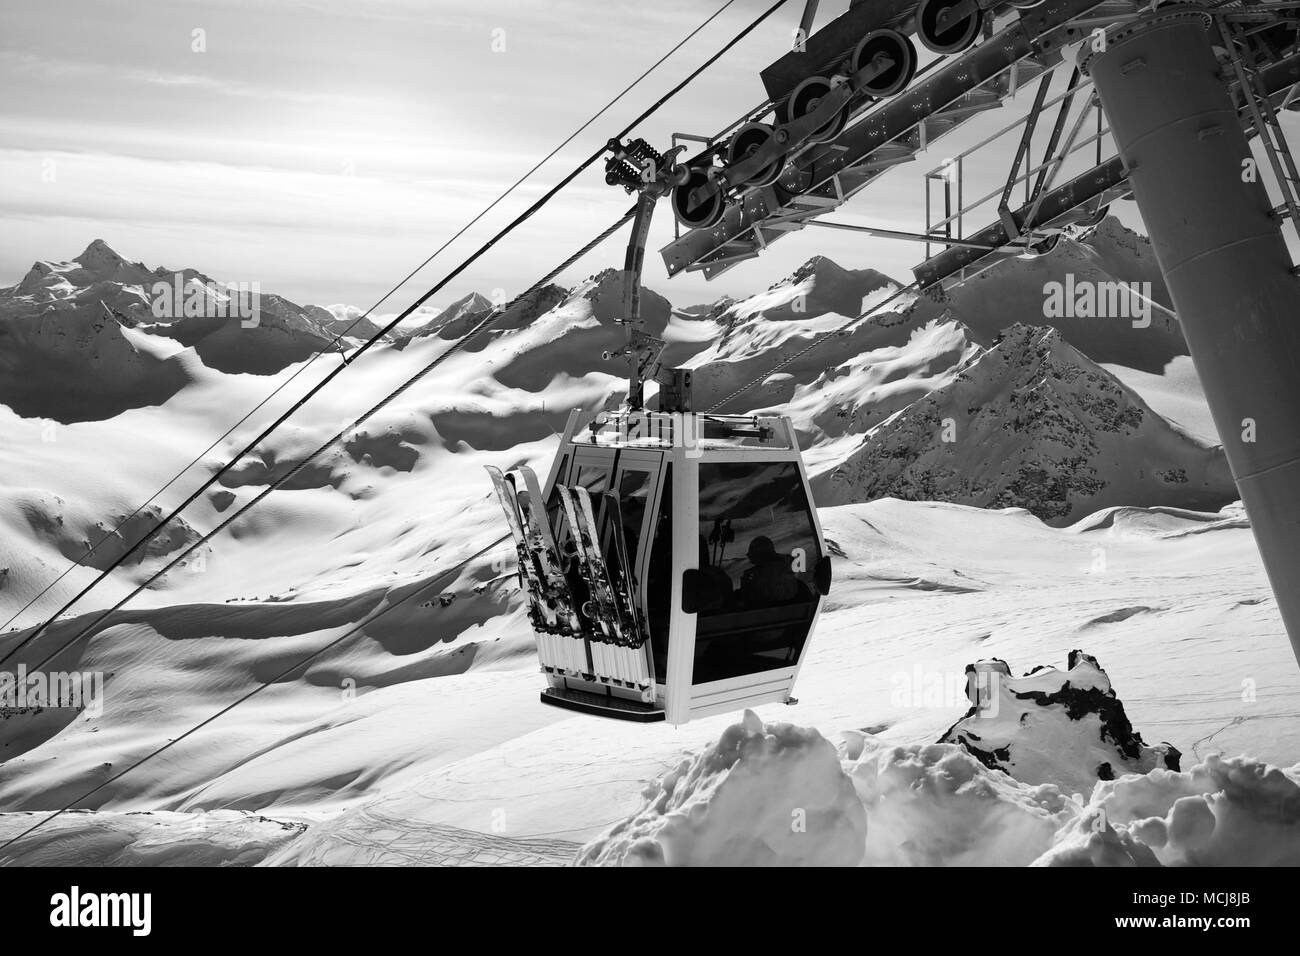 Visualizzazione bianco e nero su impianti di risalita alla stazione sciistica. Montagne del Caucaso in inverno, mount Elbrus. Foto Stock